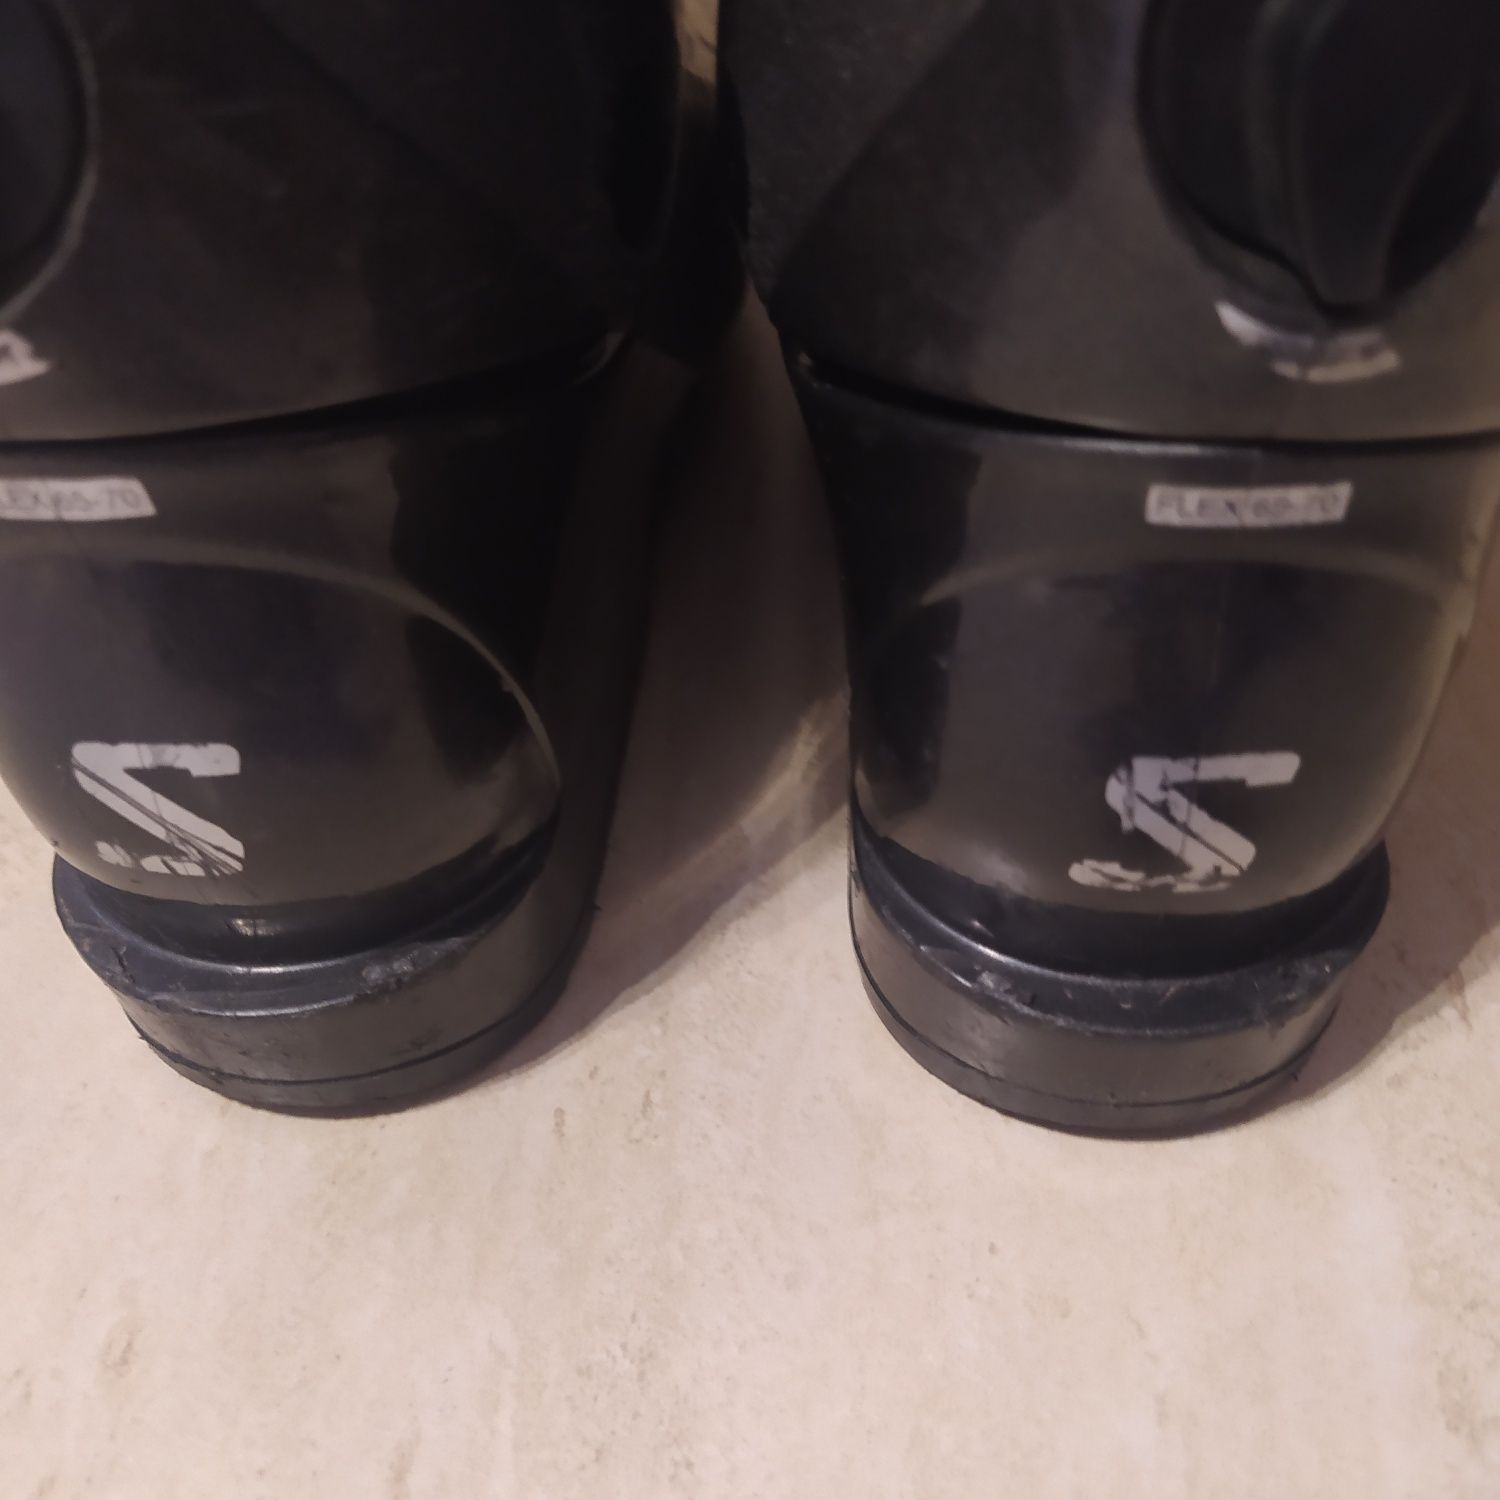 Buty narciarskie marki SALOMON. Długość wkładki 24,5 cm